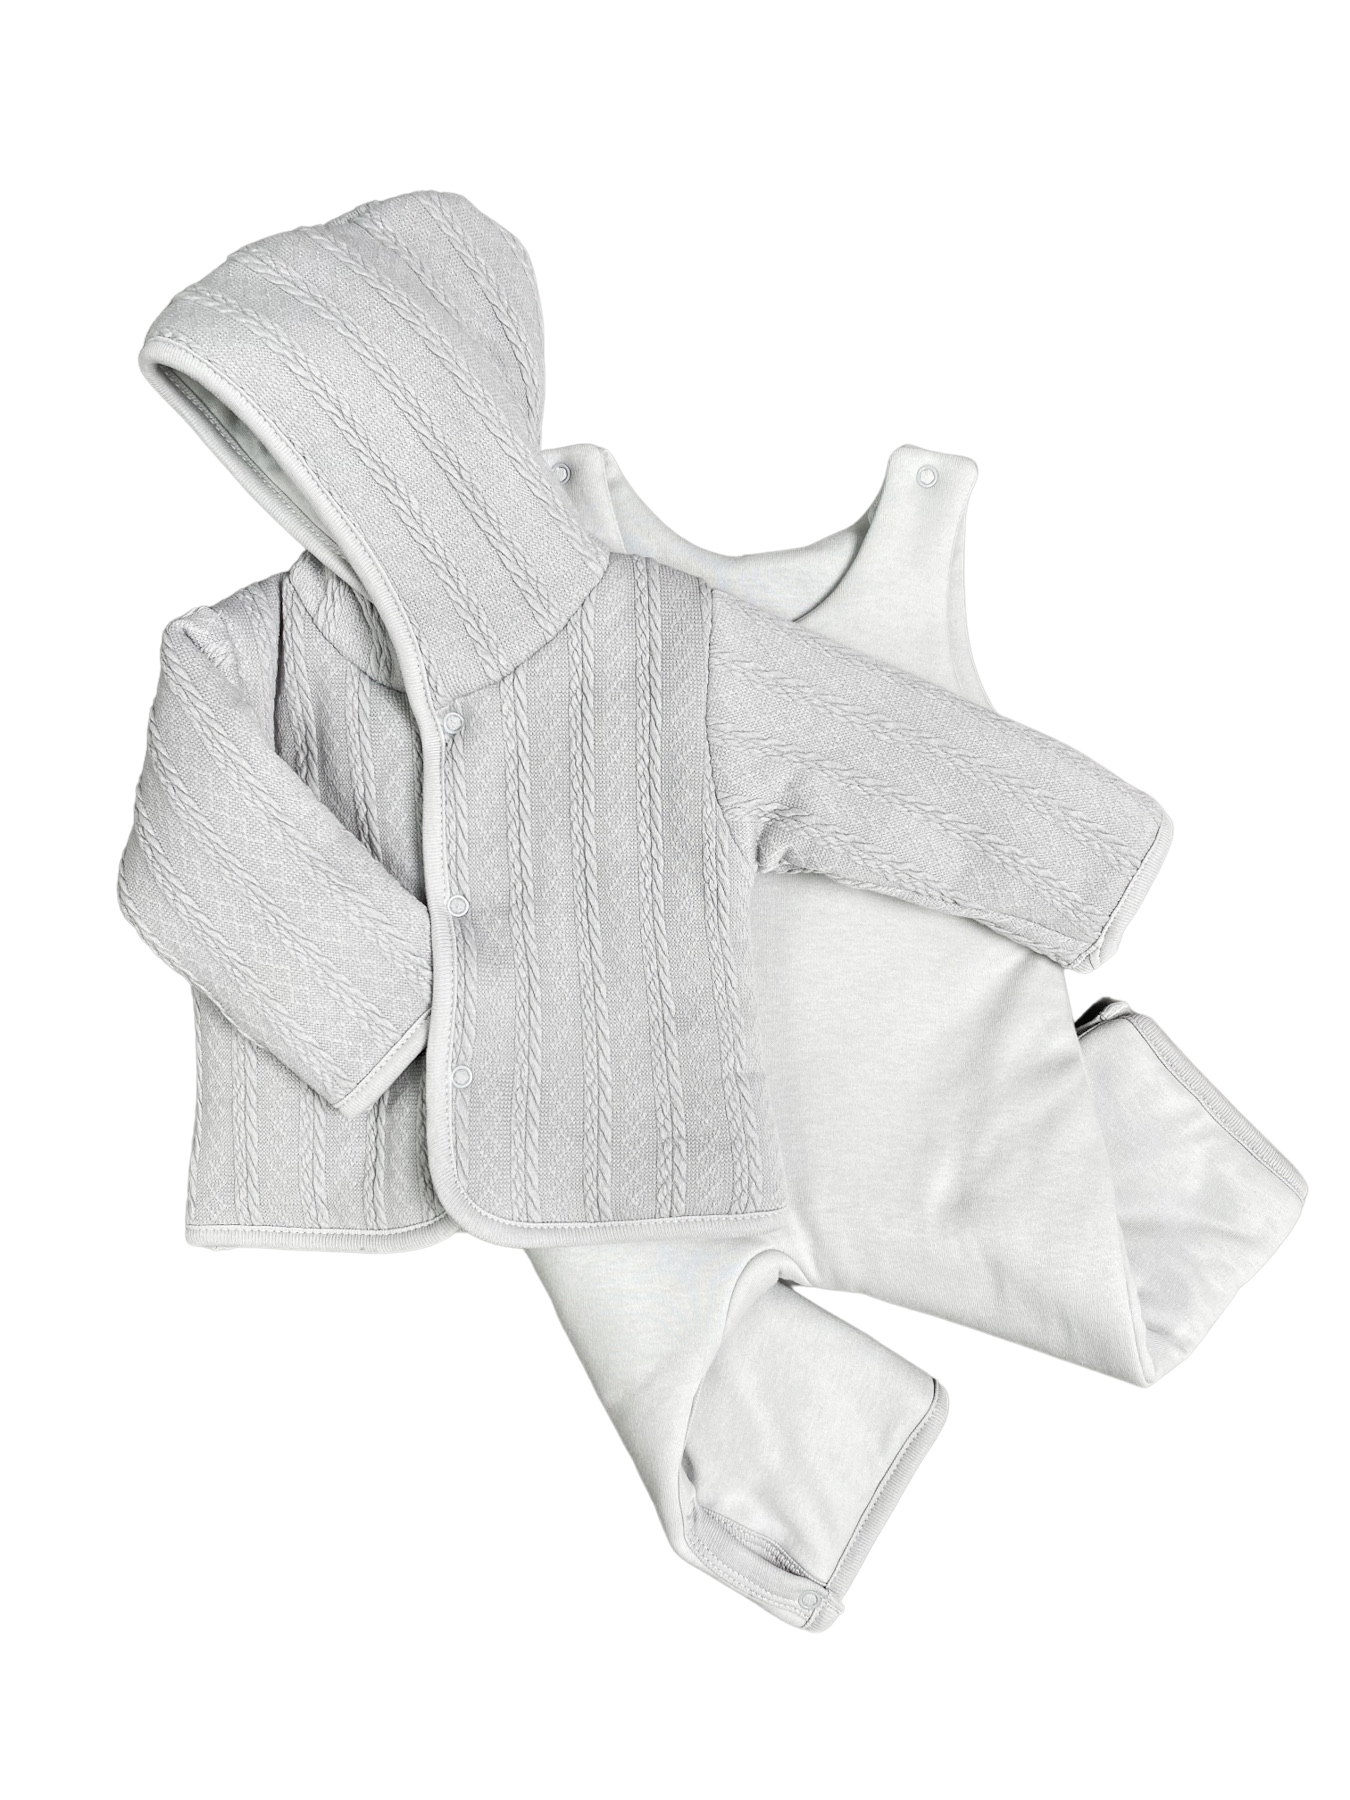 Комплект верхней одежды детский Clariss Вязаный микс, серый; светло-серый, 68